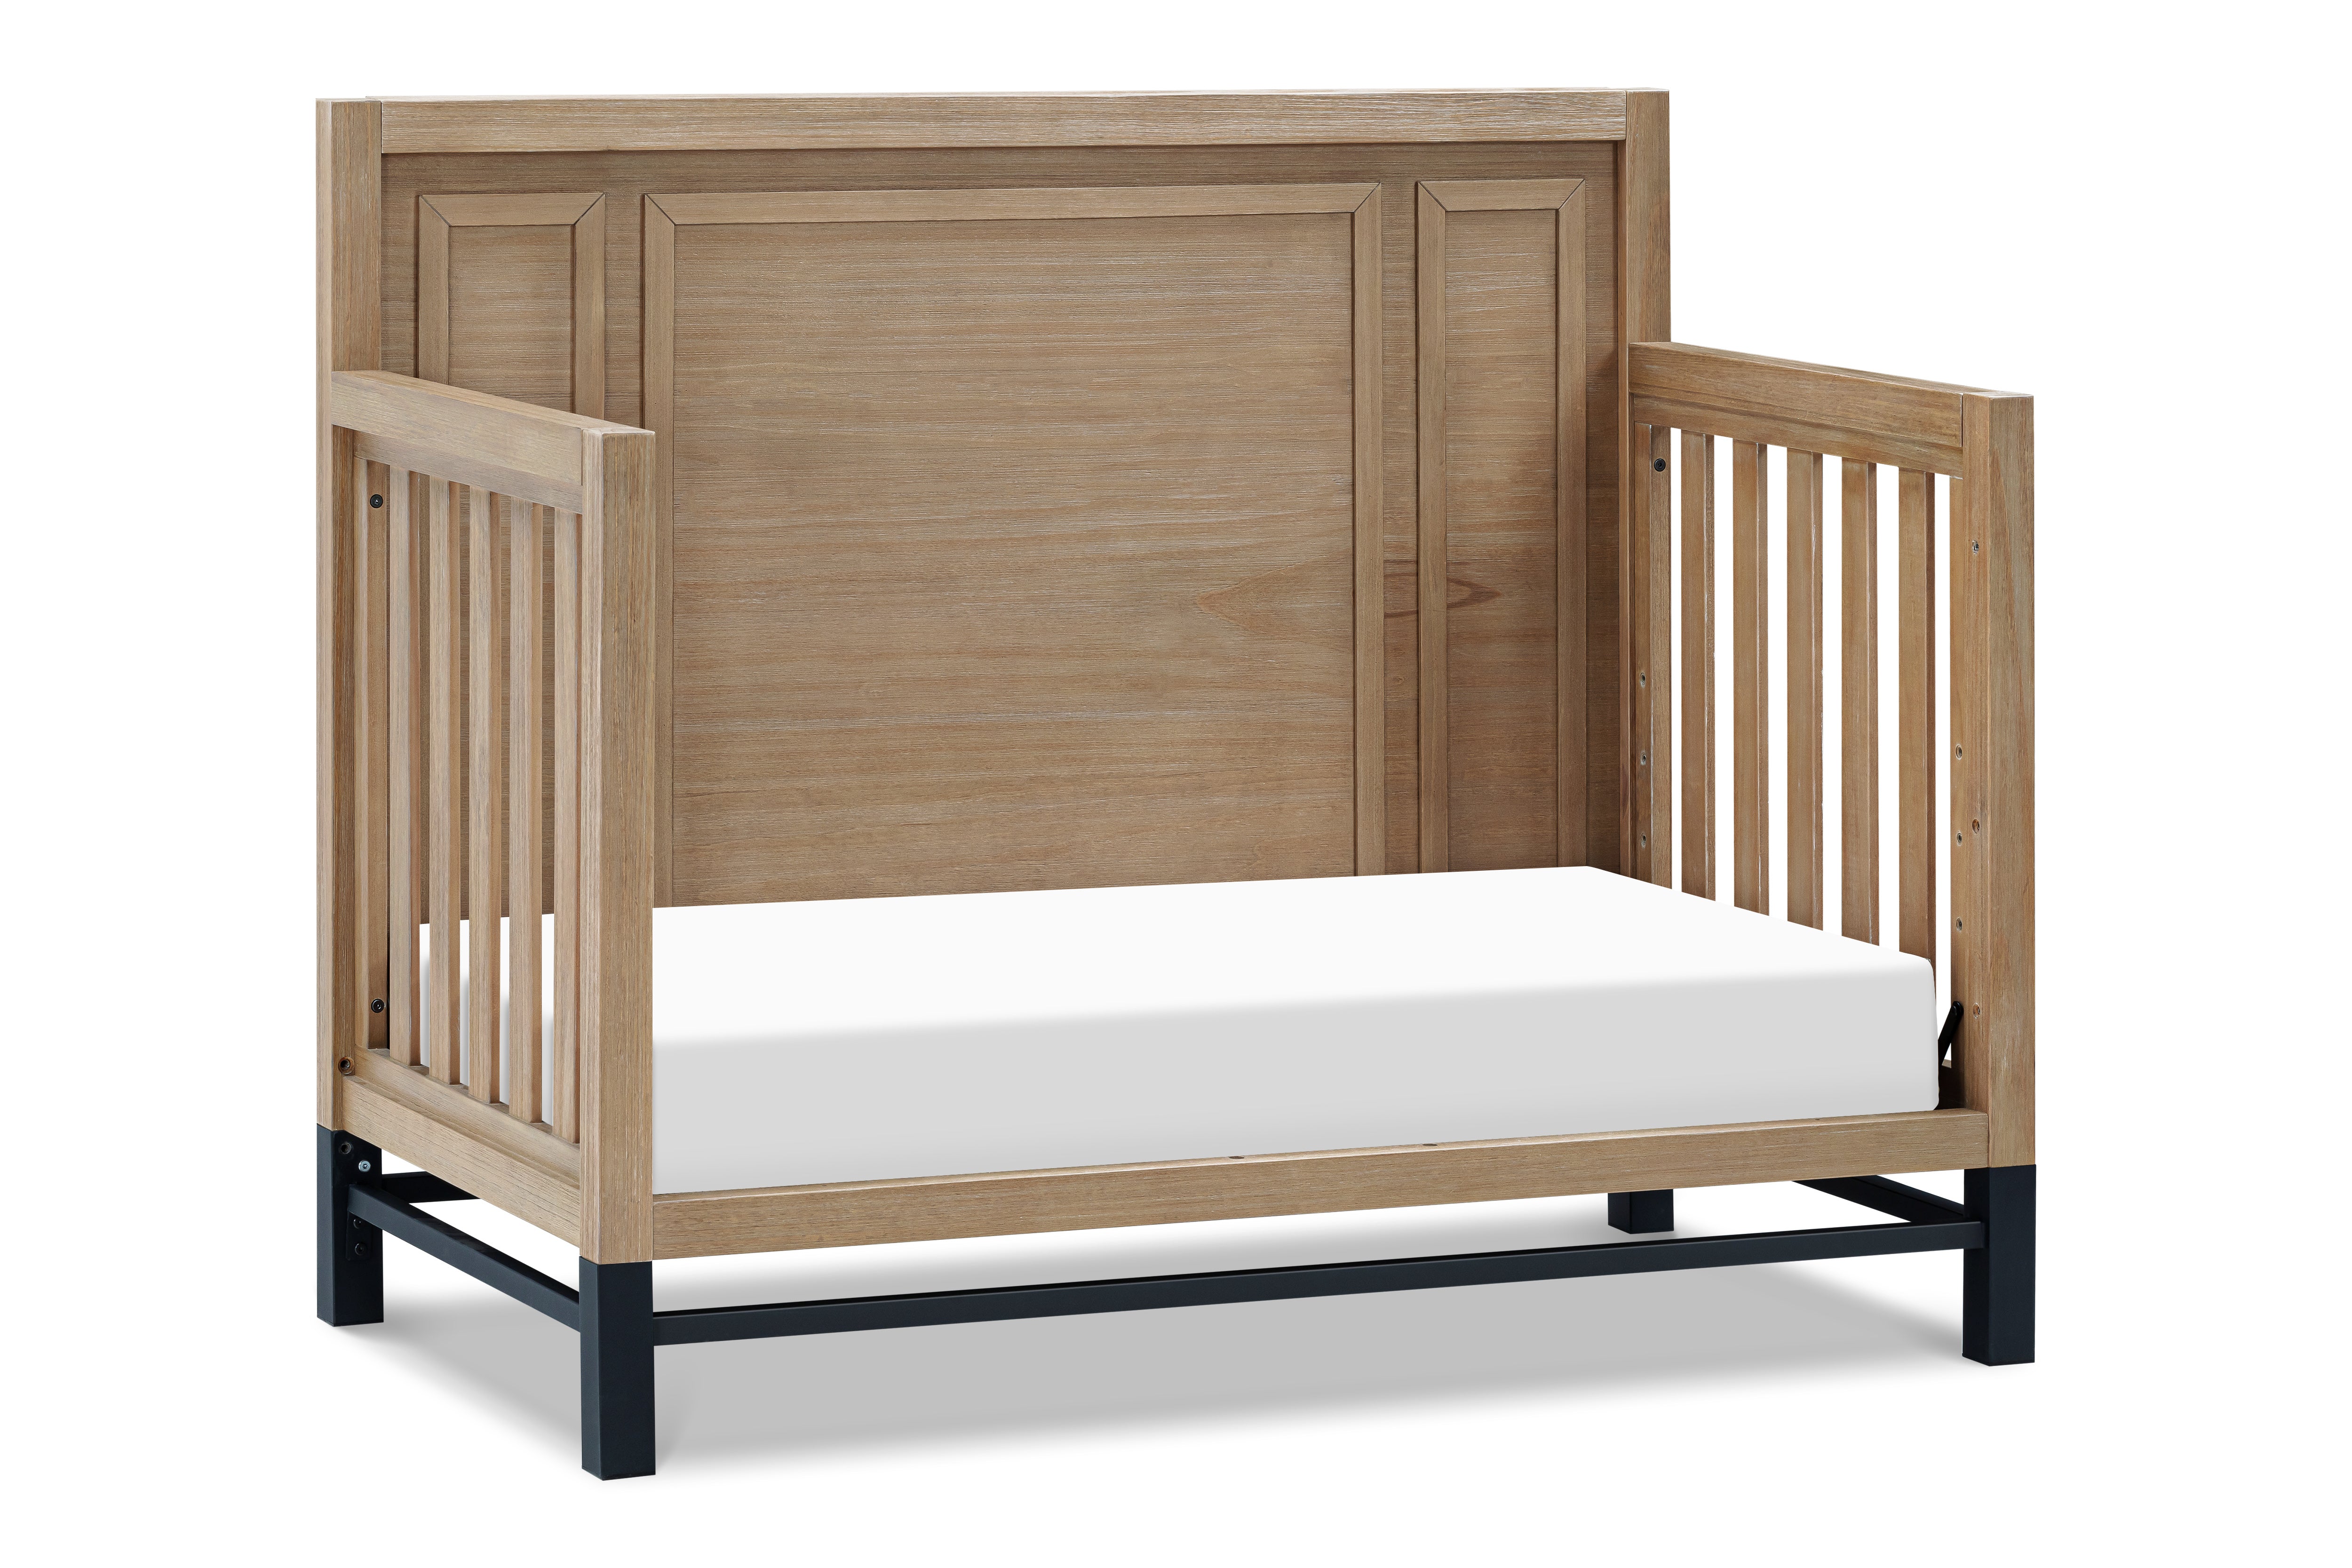 Newbern 4-in-1 Convertible Crib - Driftwood - Twinkle Twinkle Little One